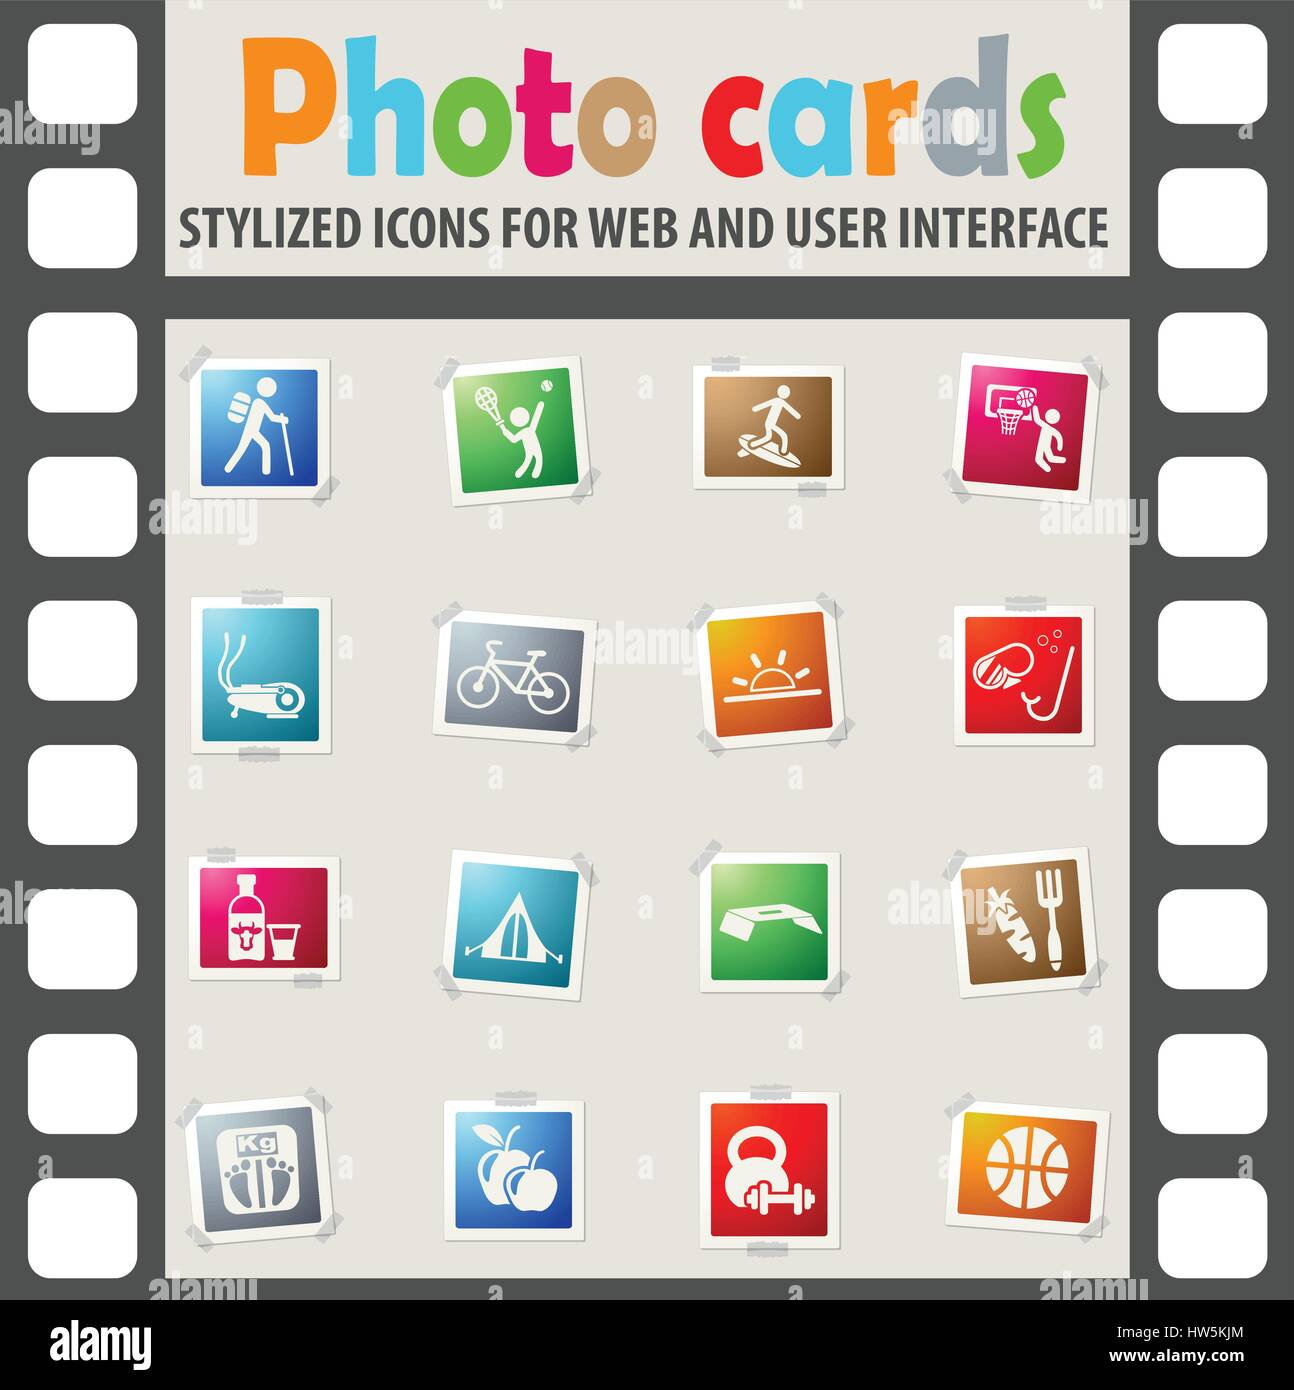 gesunde Lebensweise Web Icons auf Farbe Fotokarten für Benutzeroberfläche Stock Vektor